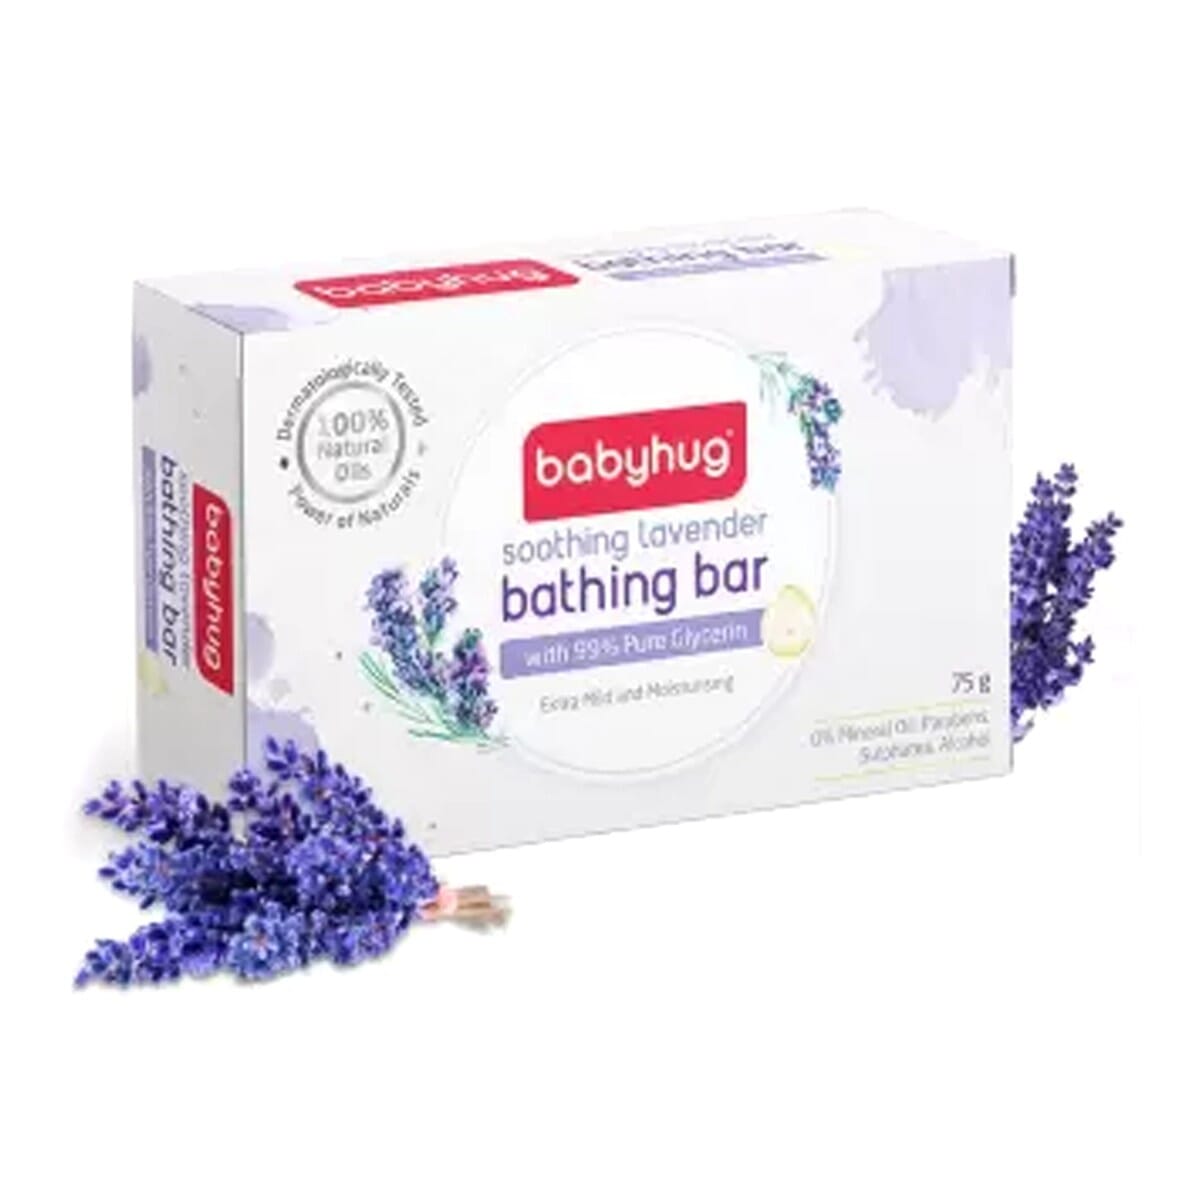 Babyhug Soothing Lavender Bathing Bar - 75 gm